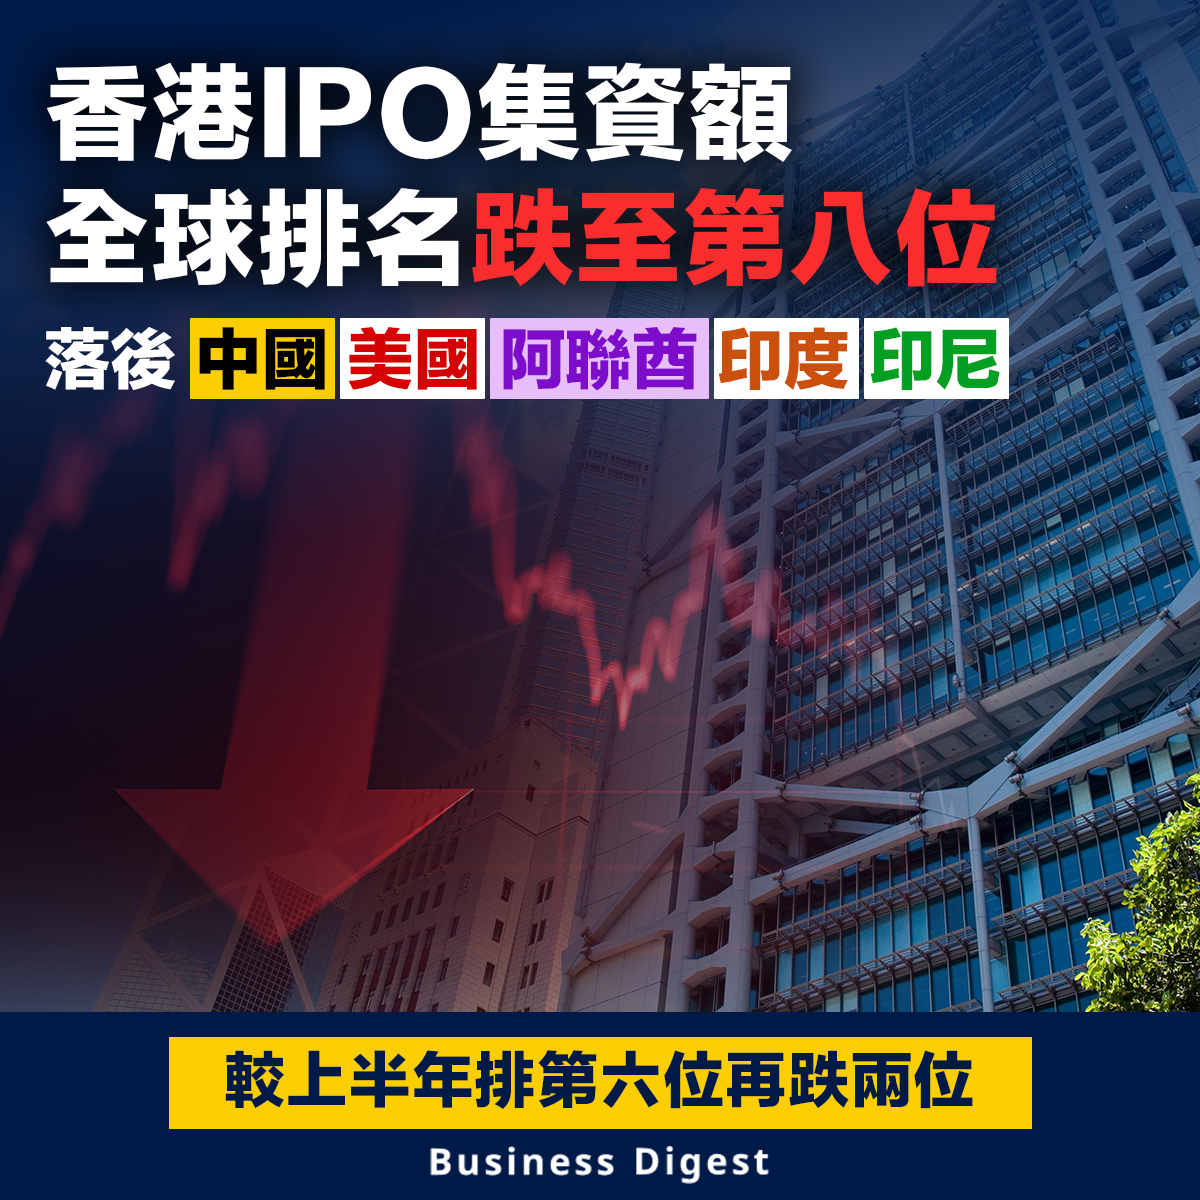 香港IPO集資額全球排名跌至第八位